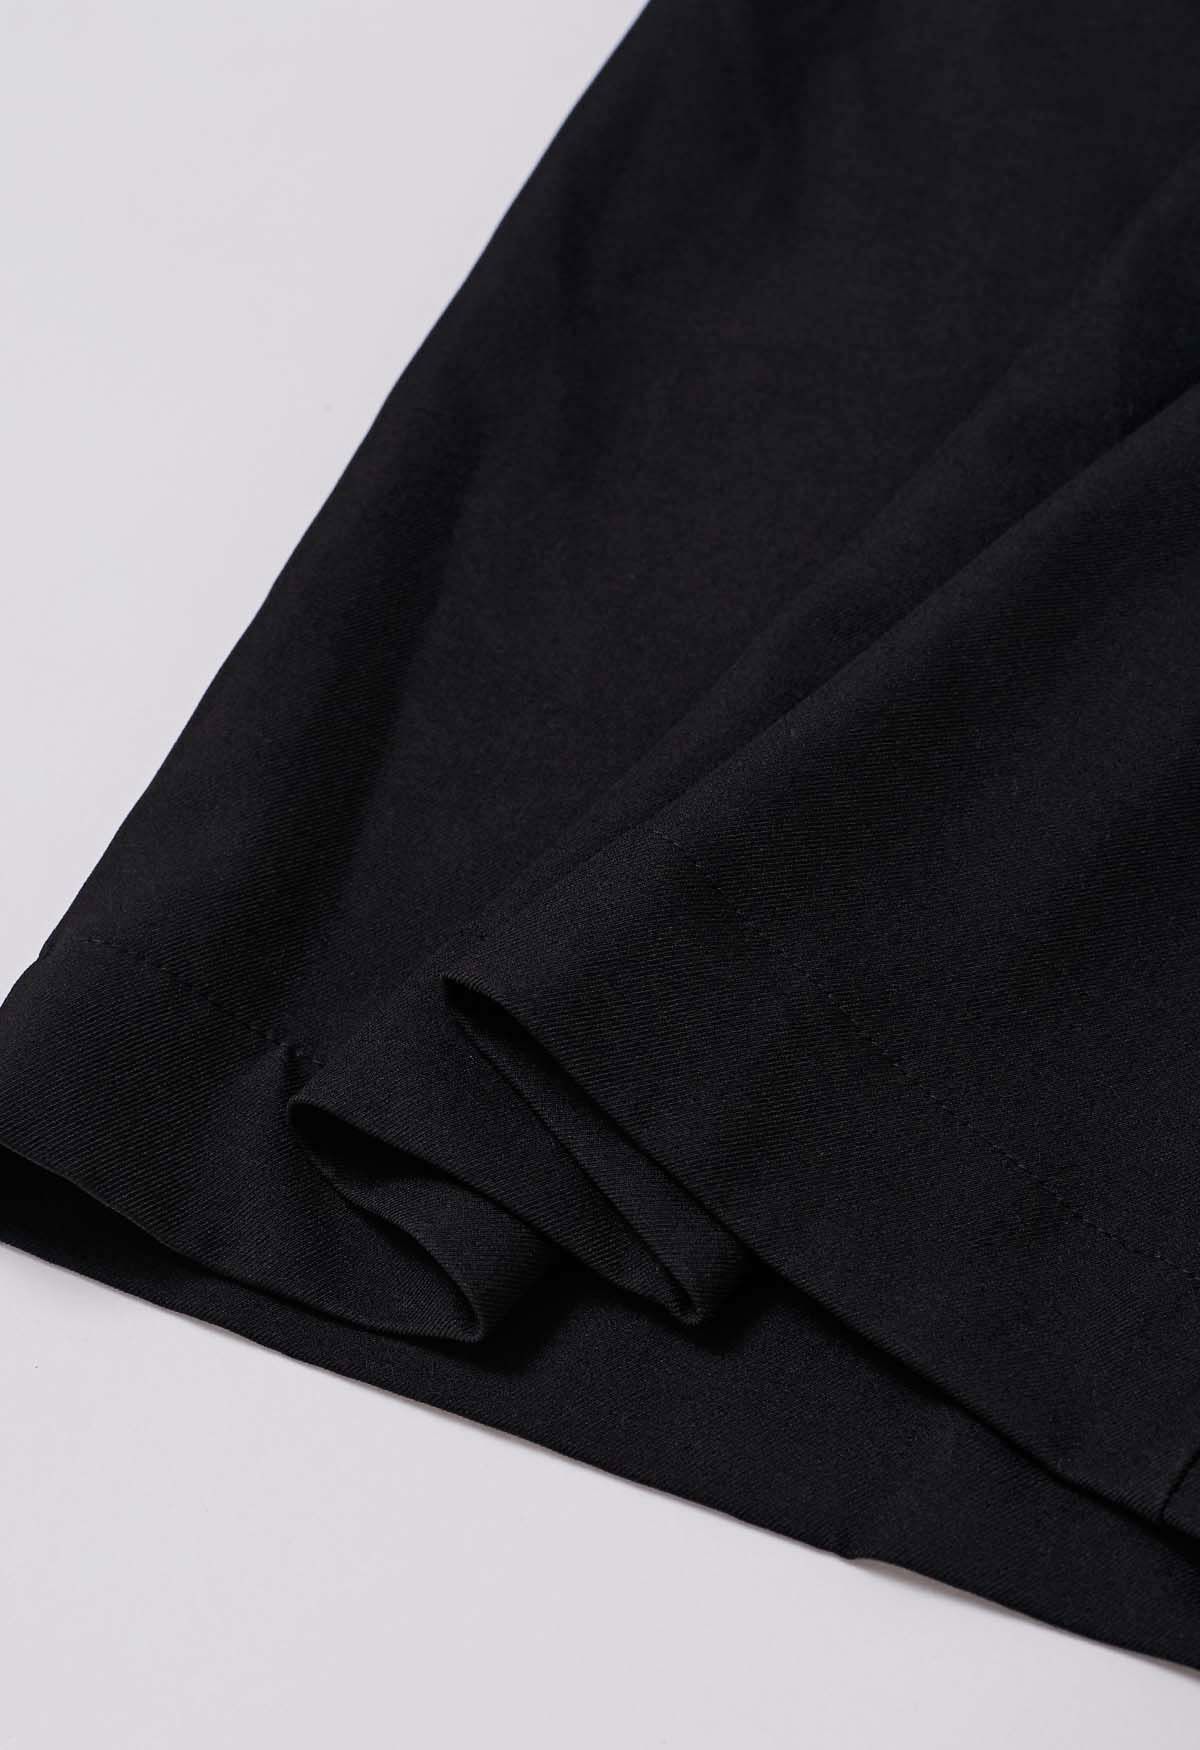 Pantalones anchos plisados con cintura anudada de moda en negro